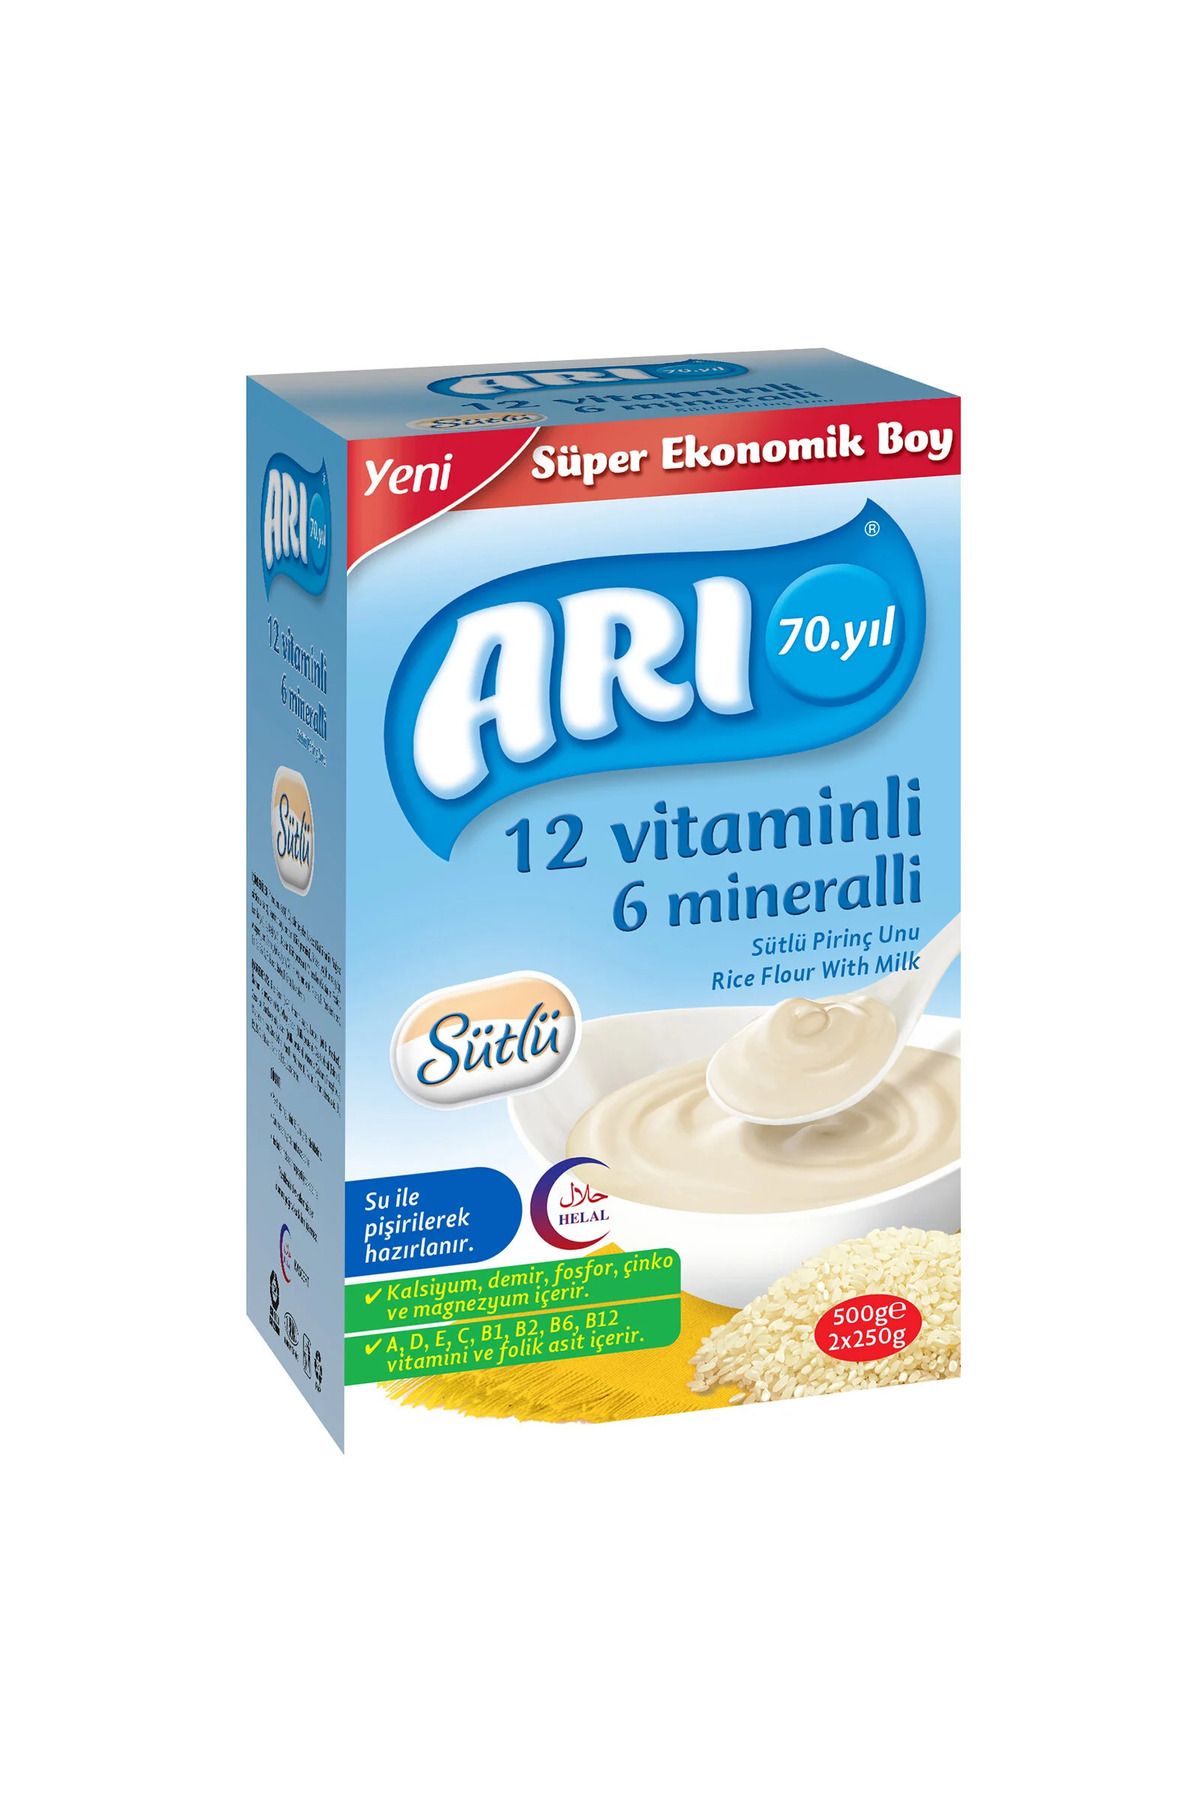 ARI 12 Vitaminli 6 Mineralli Sütlü Pirinç Unu 500 gr